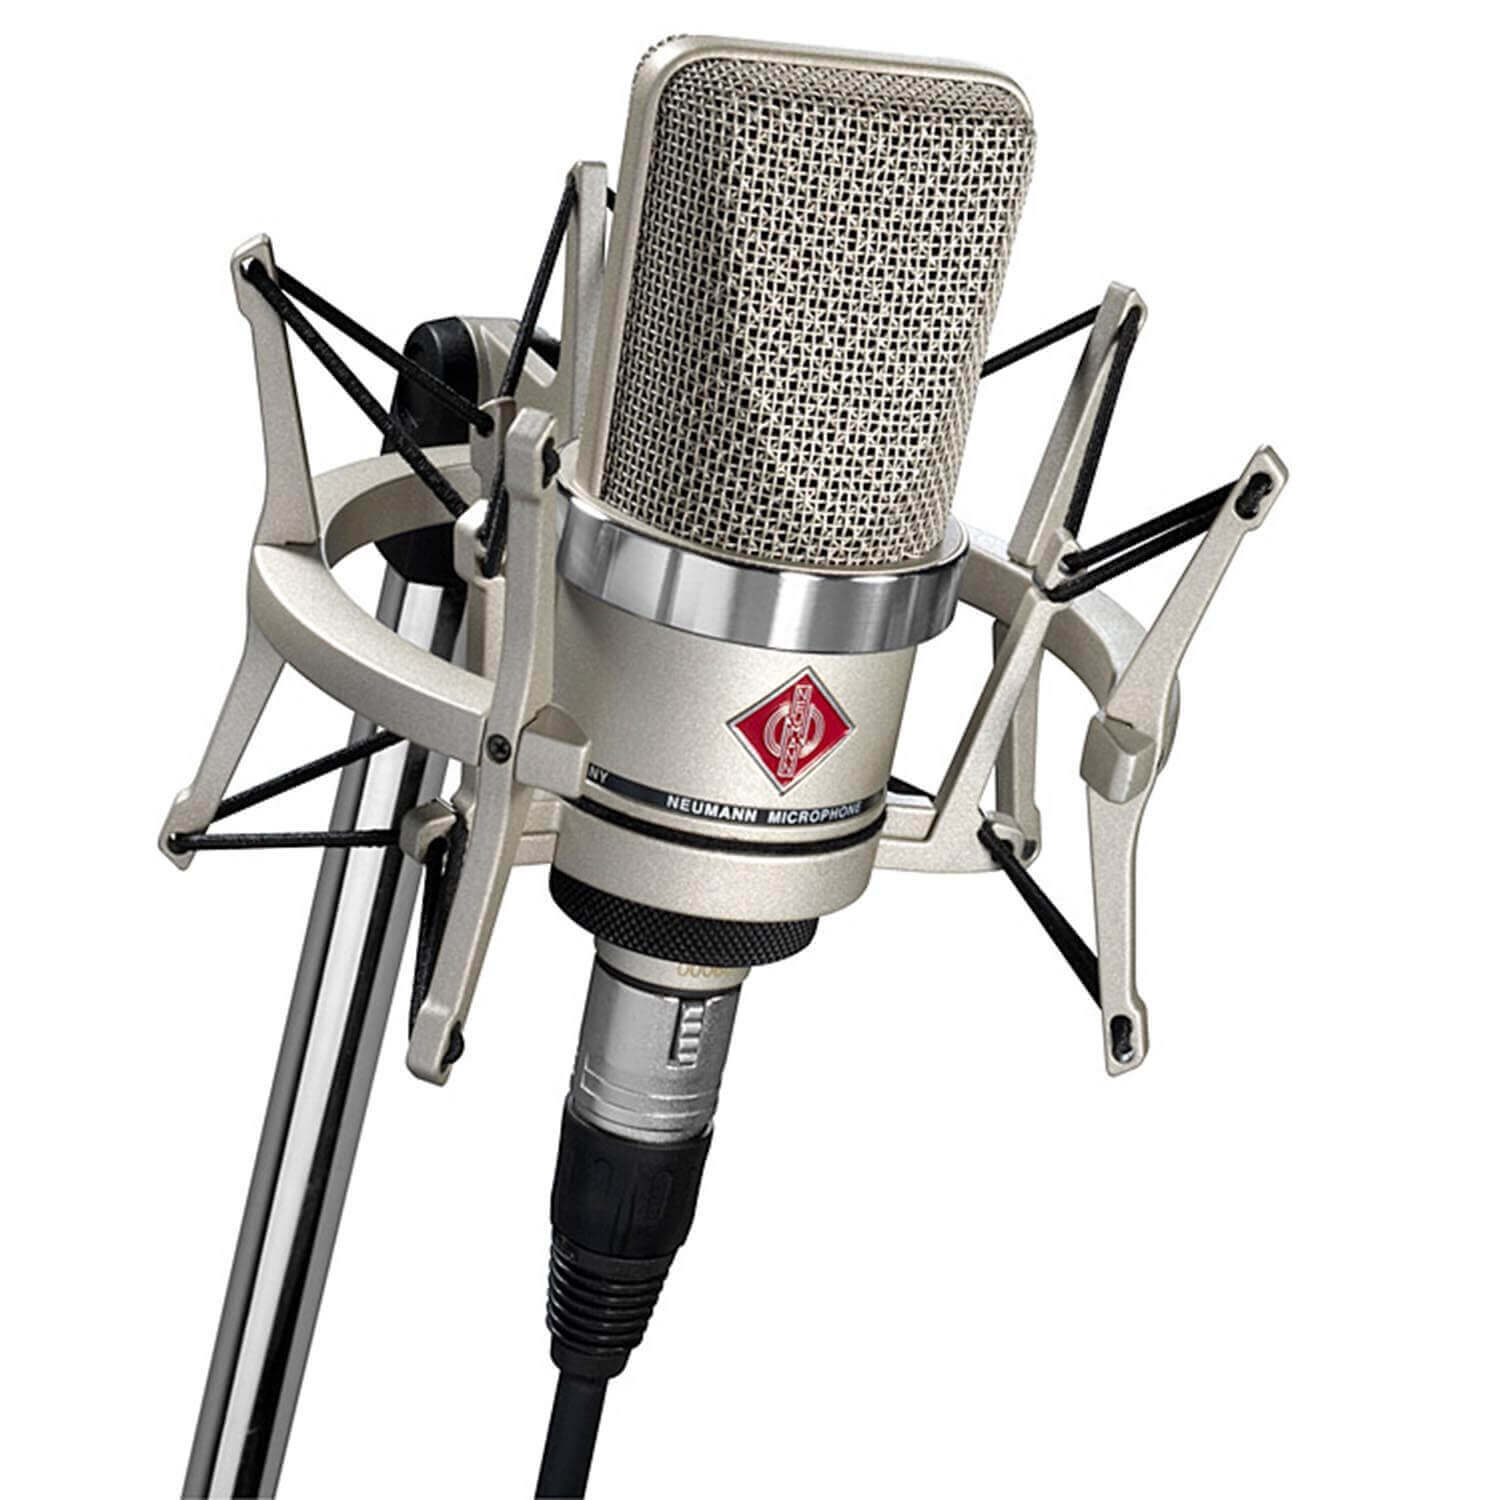 studio microphones